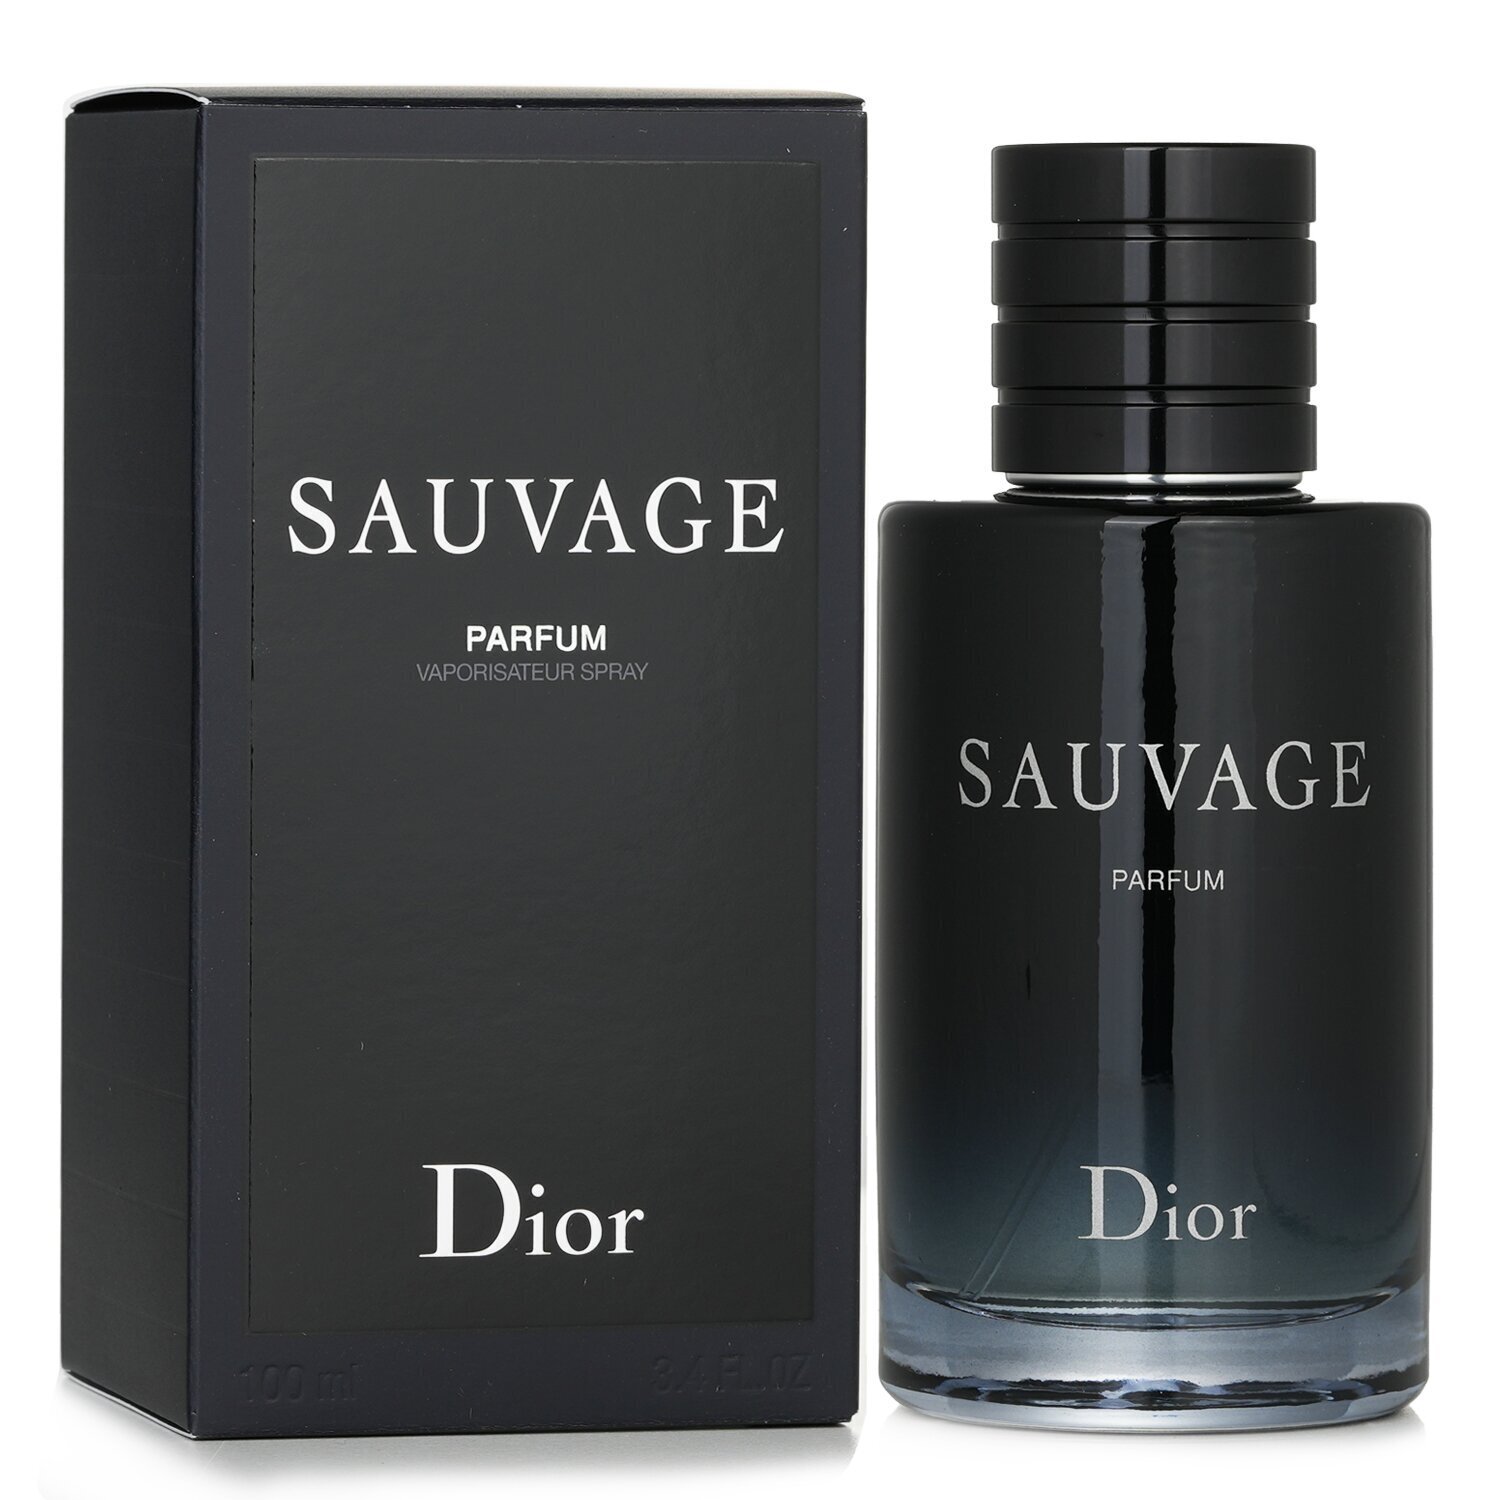 Christian Dior Sauvage عطر سبراي 100ml/3.3oz